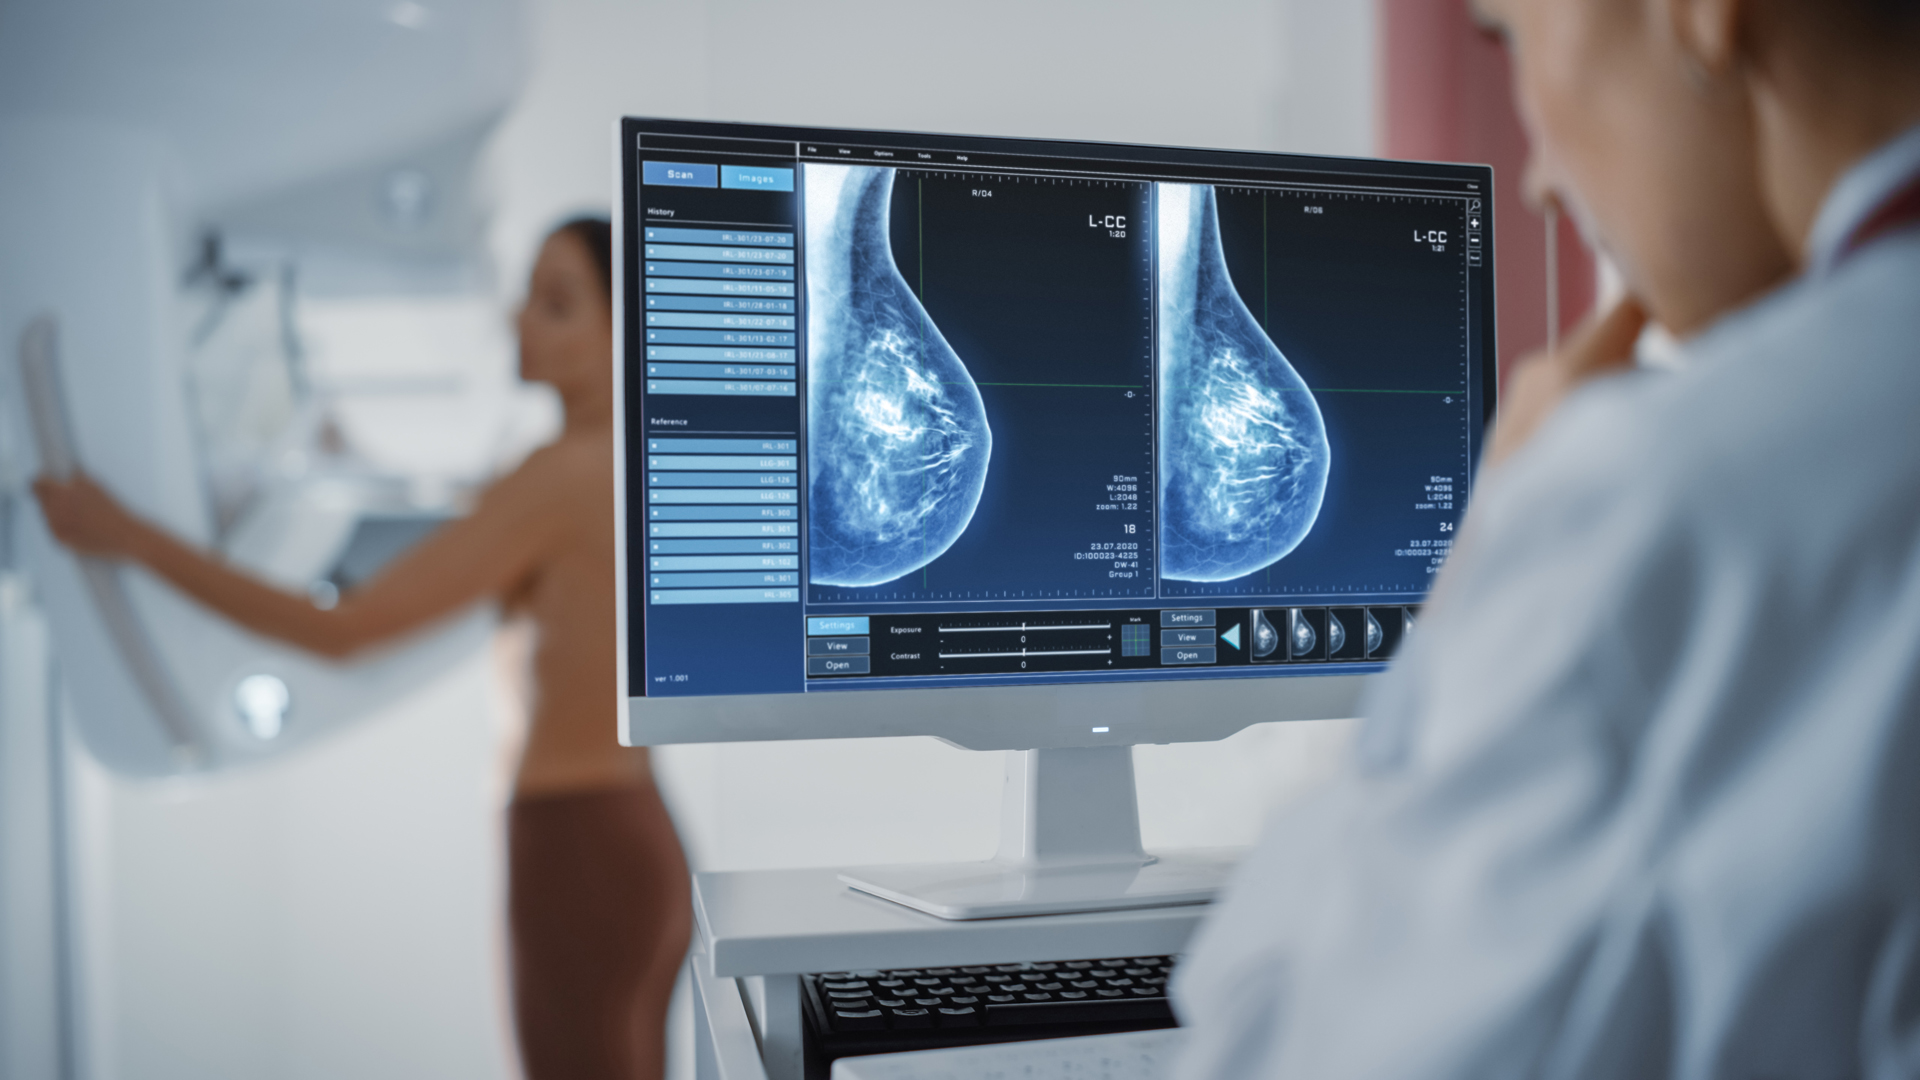 Mammographie-Bilder werden auf einem Monitor dagestellt 